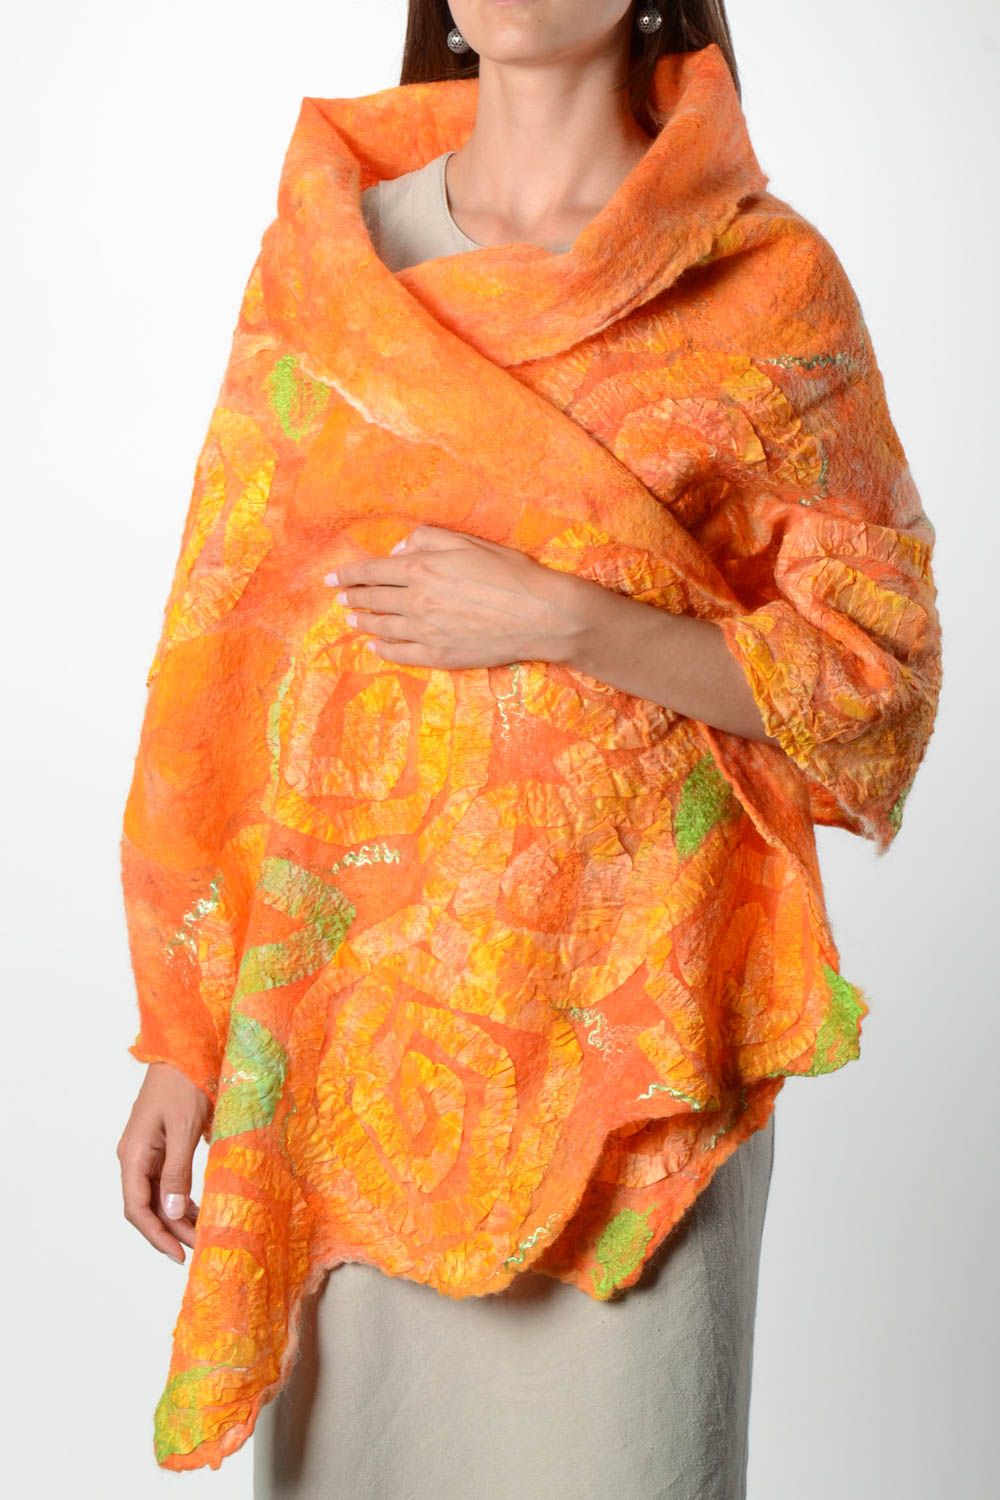 Женский шарф палантин ручной работы валяный палантин из шерсти оранжевый фото 1